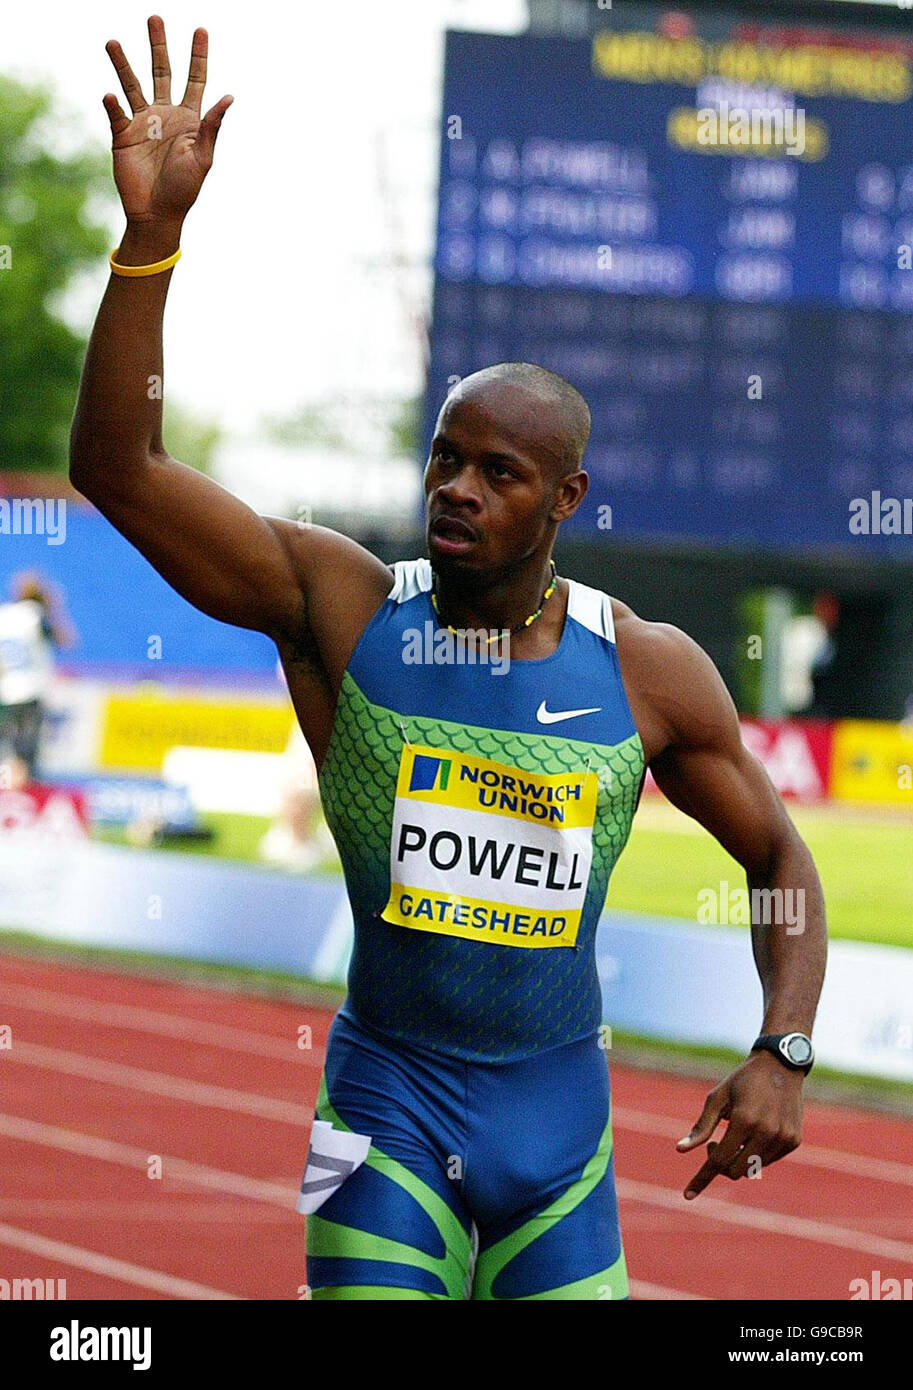 Asafa Powell célèbre en Jamaïque son record du monde de 9.77 secondes en  remportant la finale masculine de 100 m au Grand Prix de l'Union de  Norwich, à Gateshead Photo Stock - Alamy